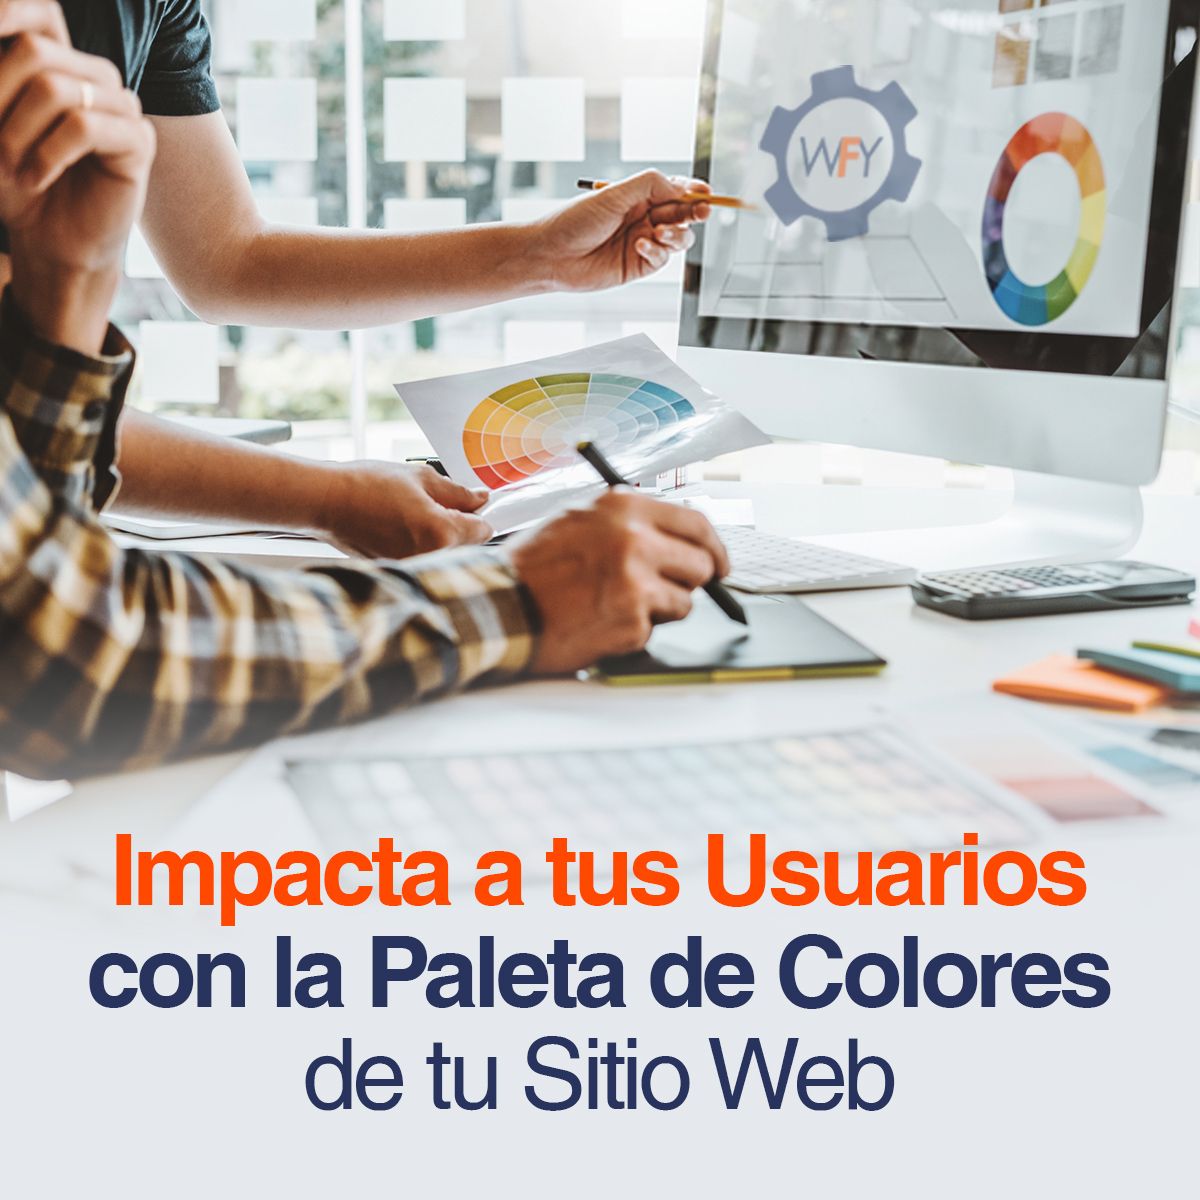 Impacta a tus Usuarios con la Paleta de Colores de tu Sitio Web